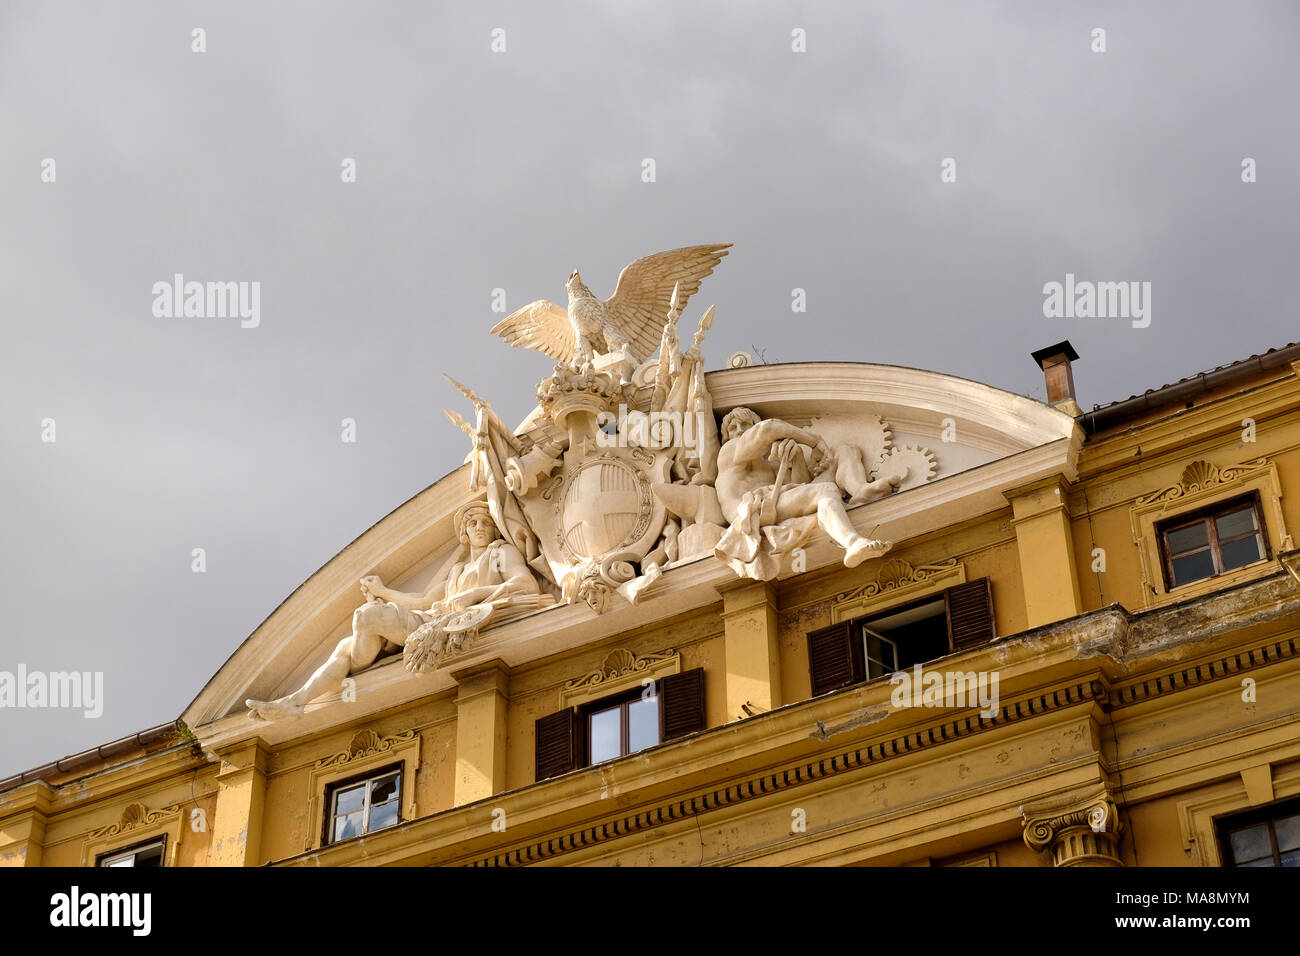 Sculptures décoratives sur les immeubles du gouvernement italien à Rome, le ministère de l'économie et des finances, Ministero dell'Economia e delle Finanze, sur la Via Cernaia. Banque D'Images